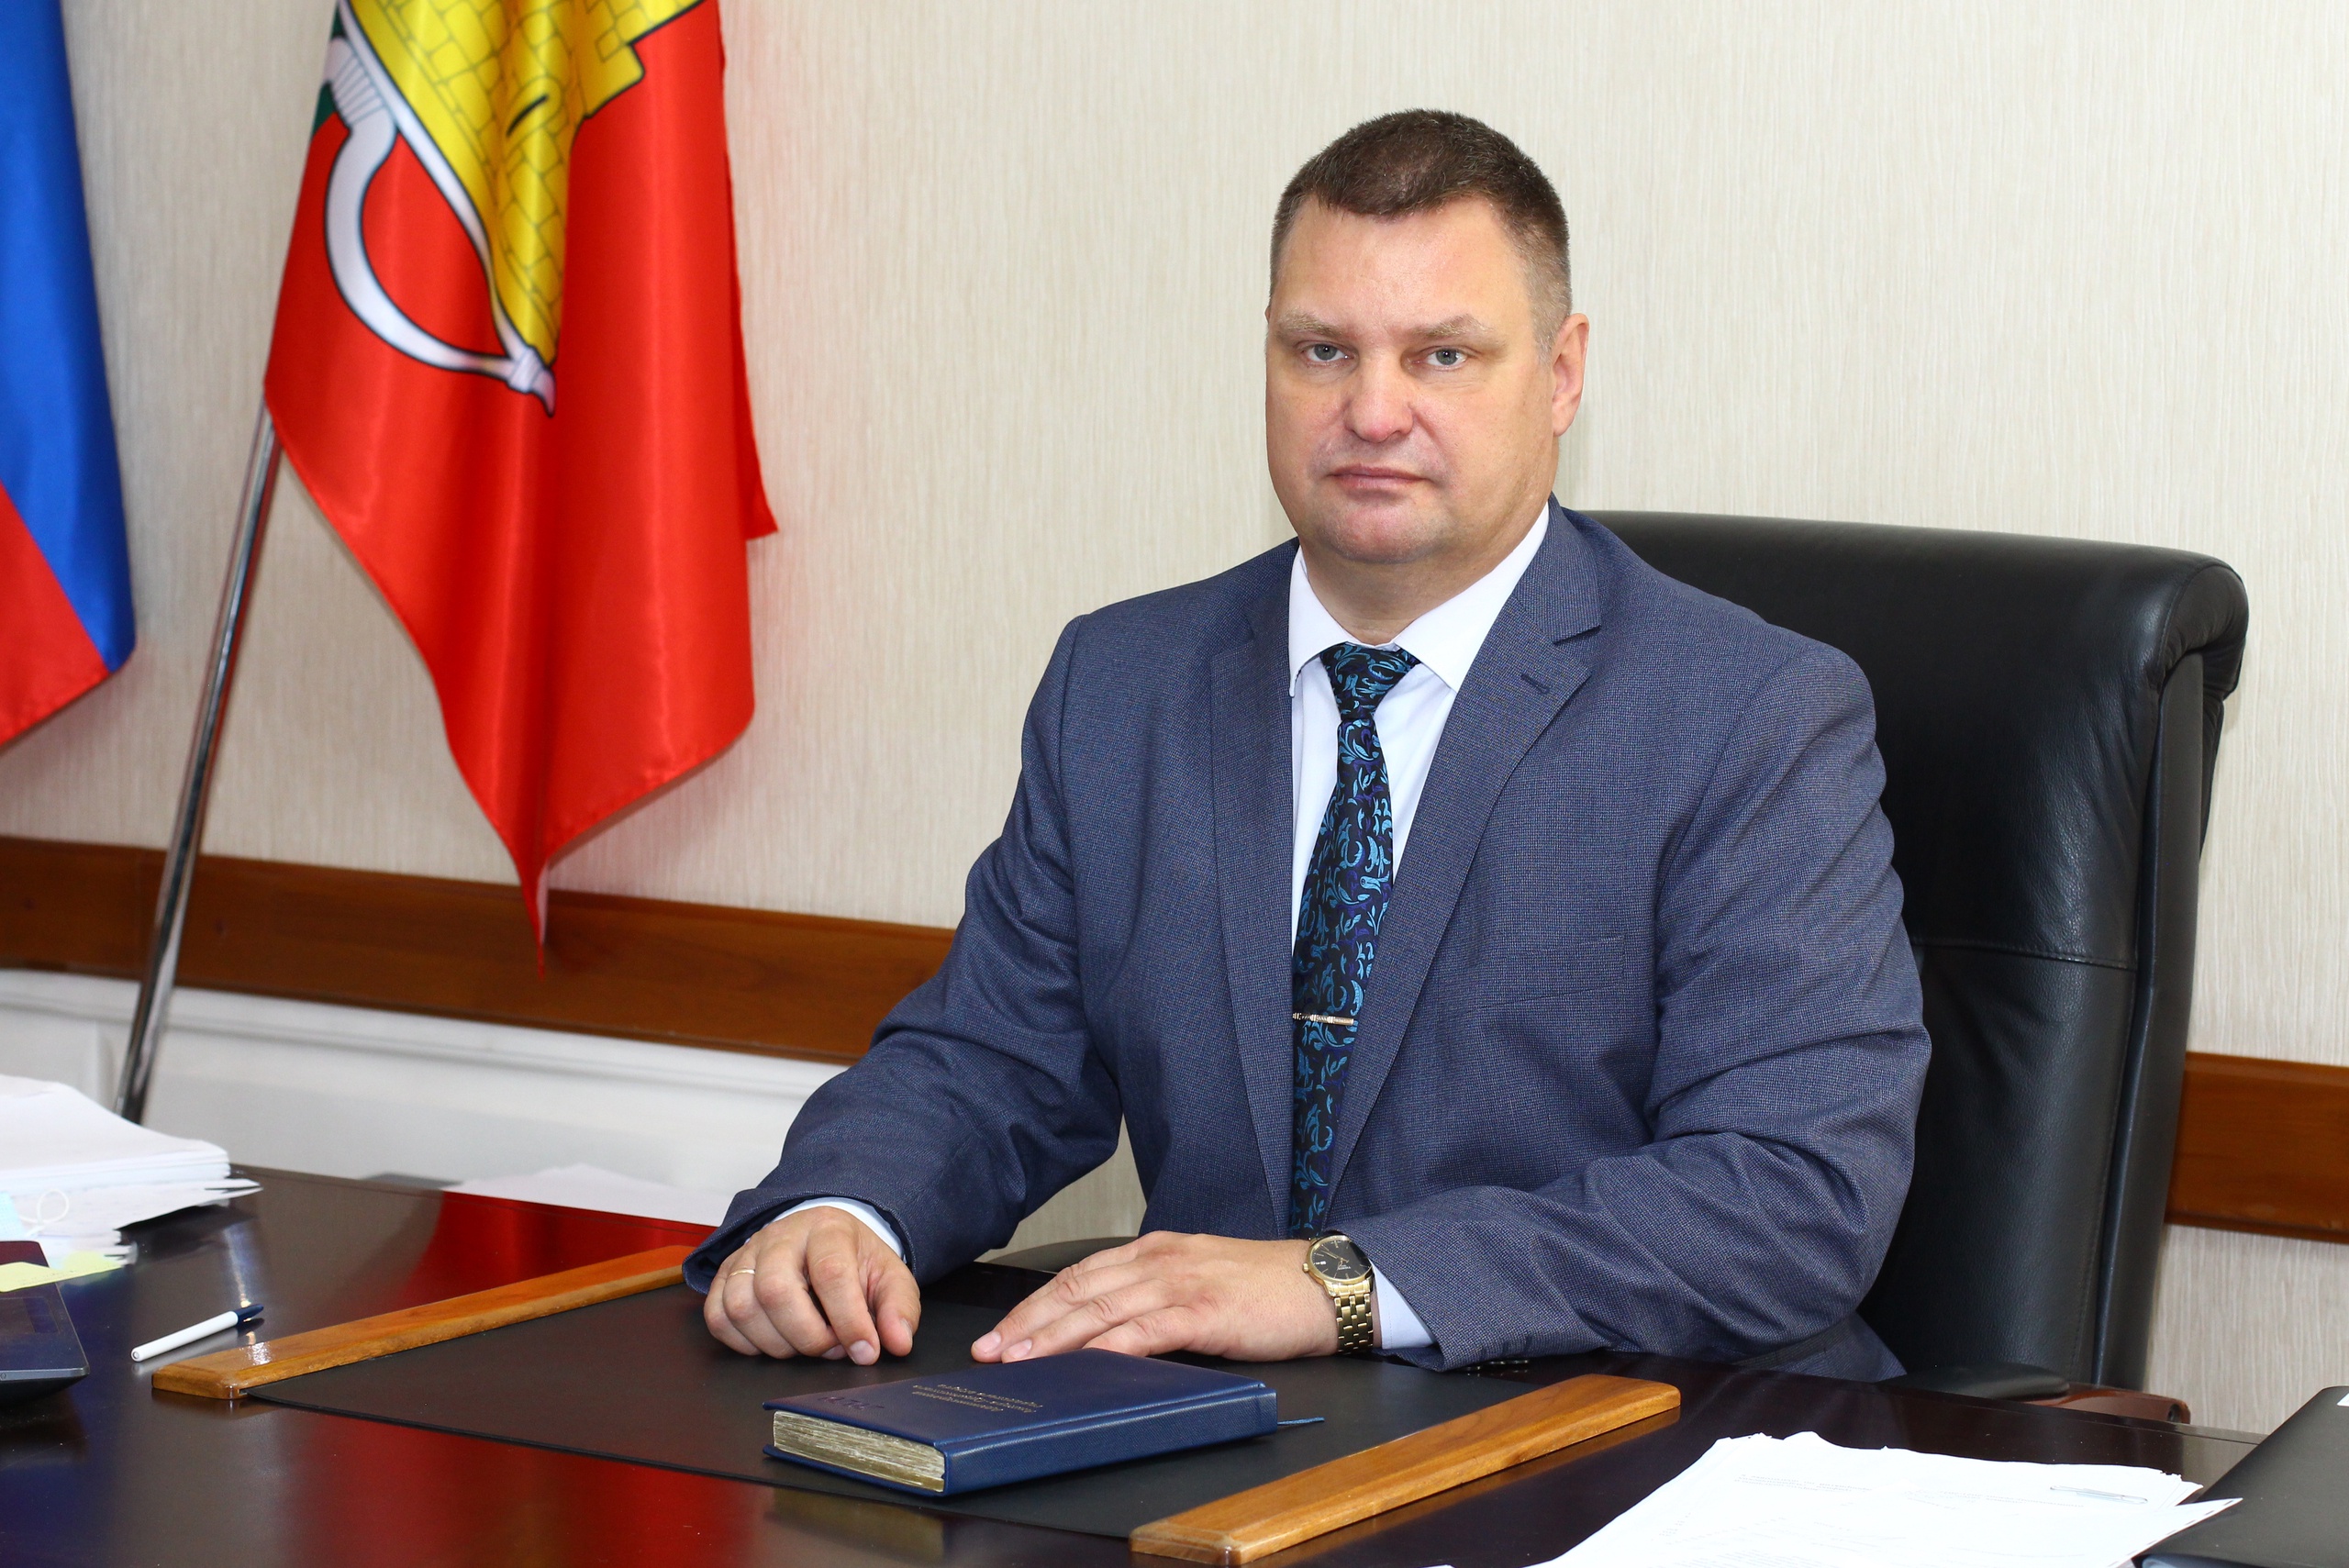 За 2021 год Рыбалко заработал 2,54 млн рублей